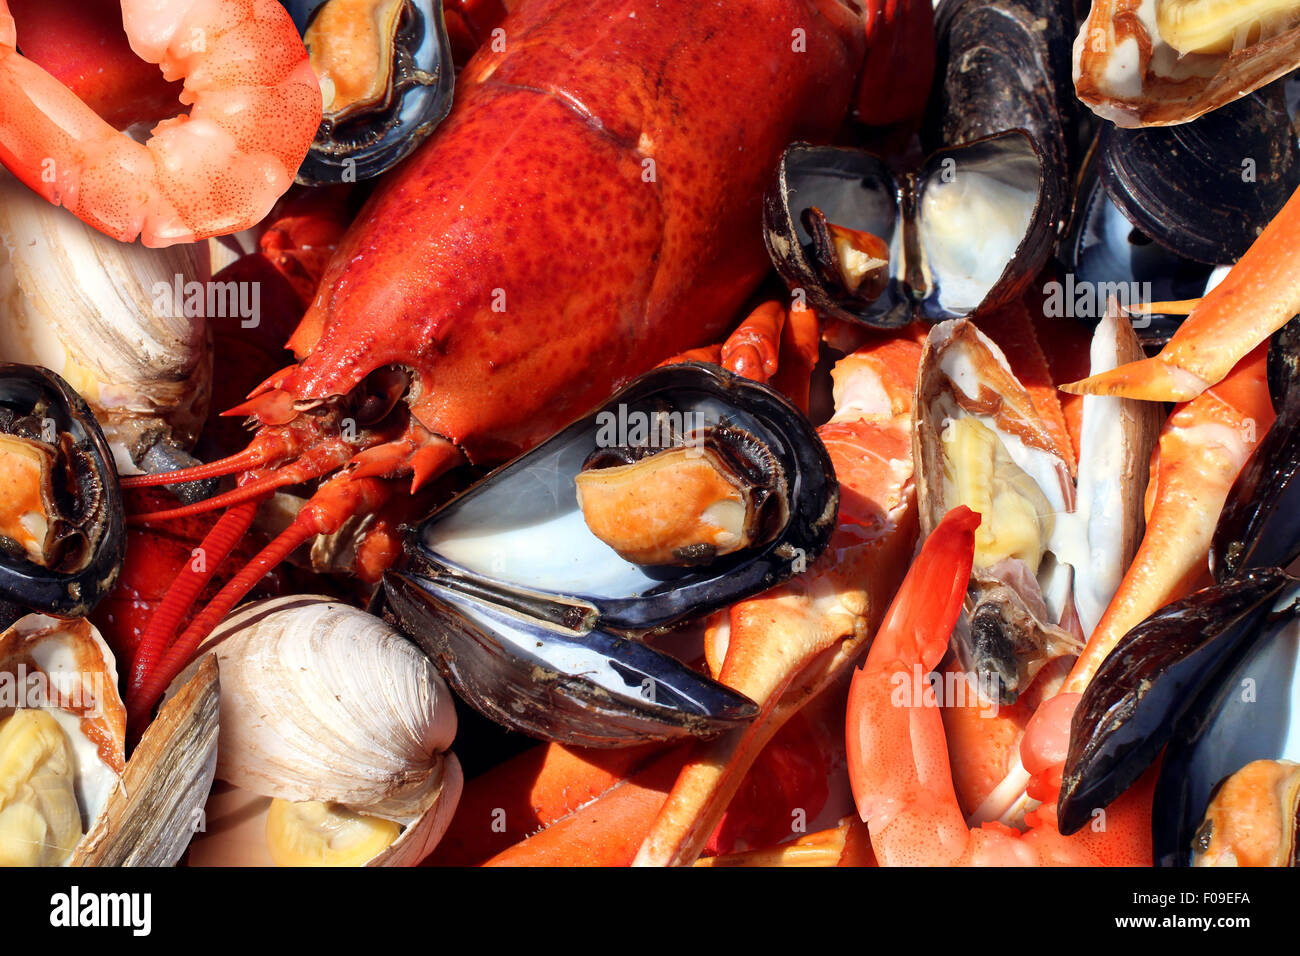 Plaque de crustacés et fruits de mer crustacés comme le homard frais à la vapeur de palourdes Moules crevettes et crabe comme un dîner gastronomique de l'océan. Banque D'Images